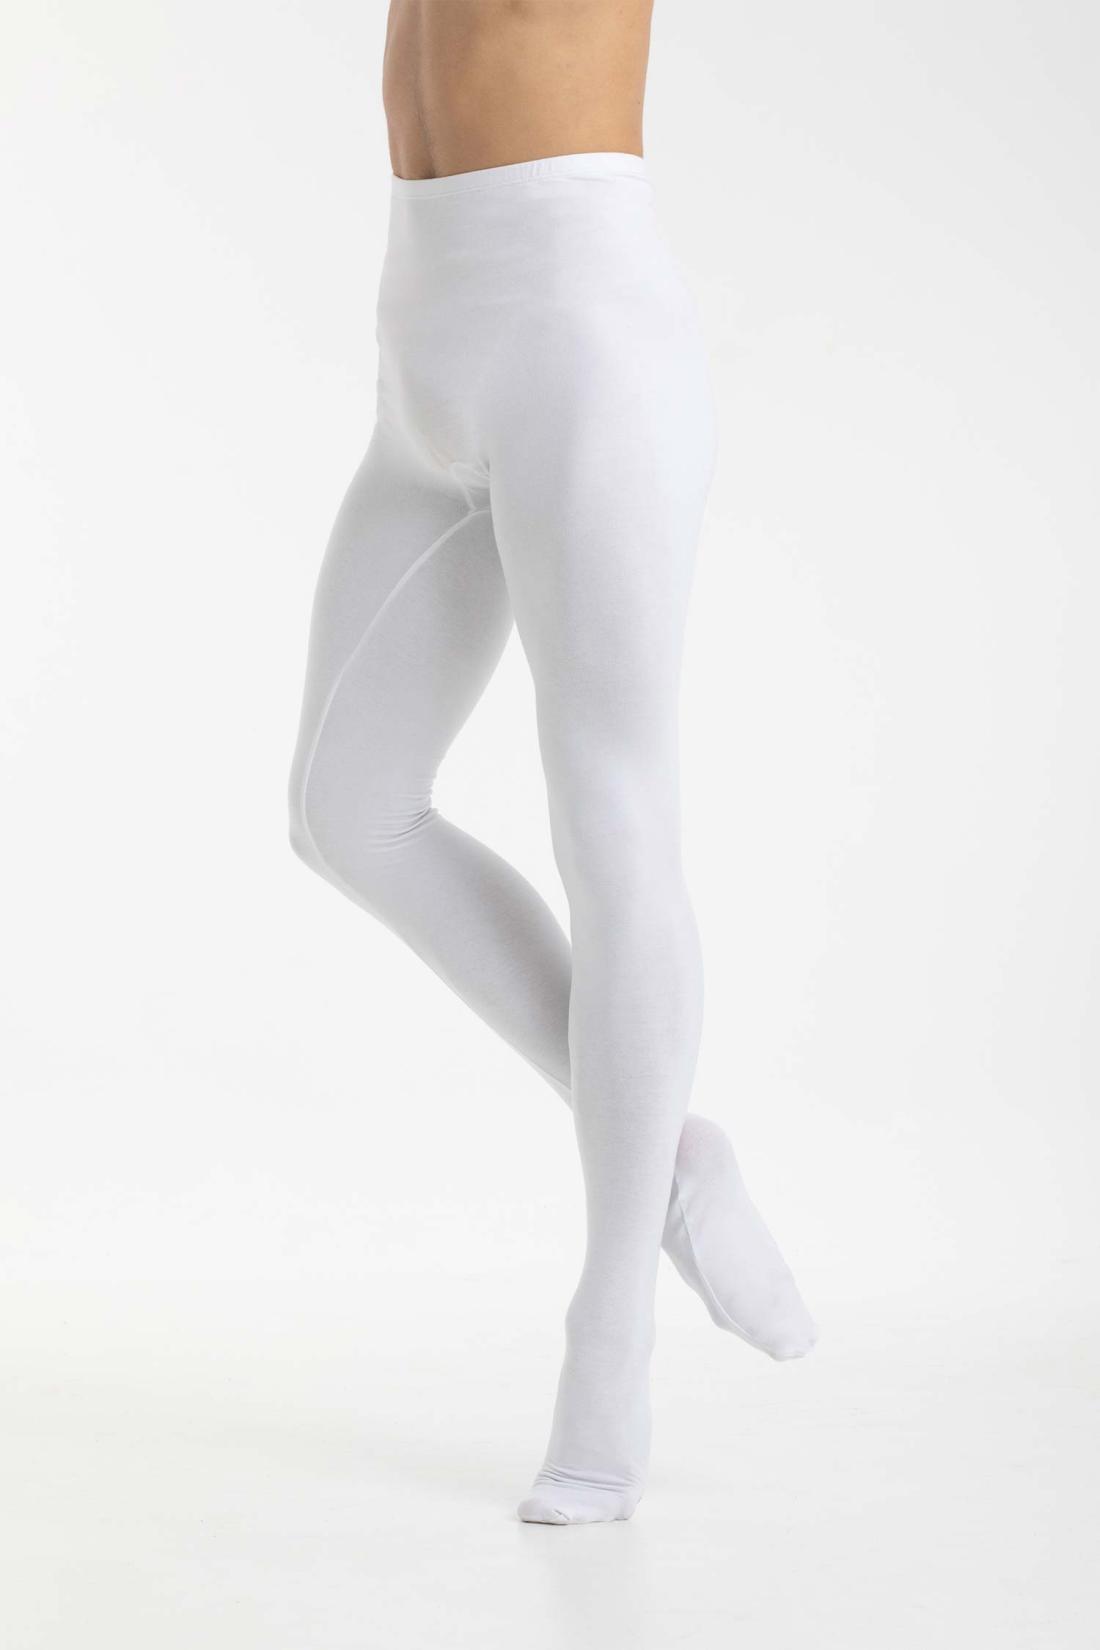 Balletthose für Herren/Jungen aus Baumwolle von Intermezzo Dance